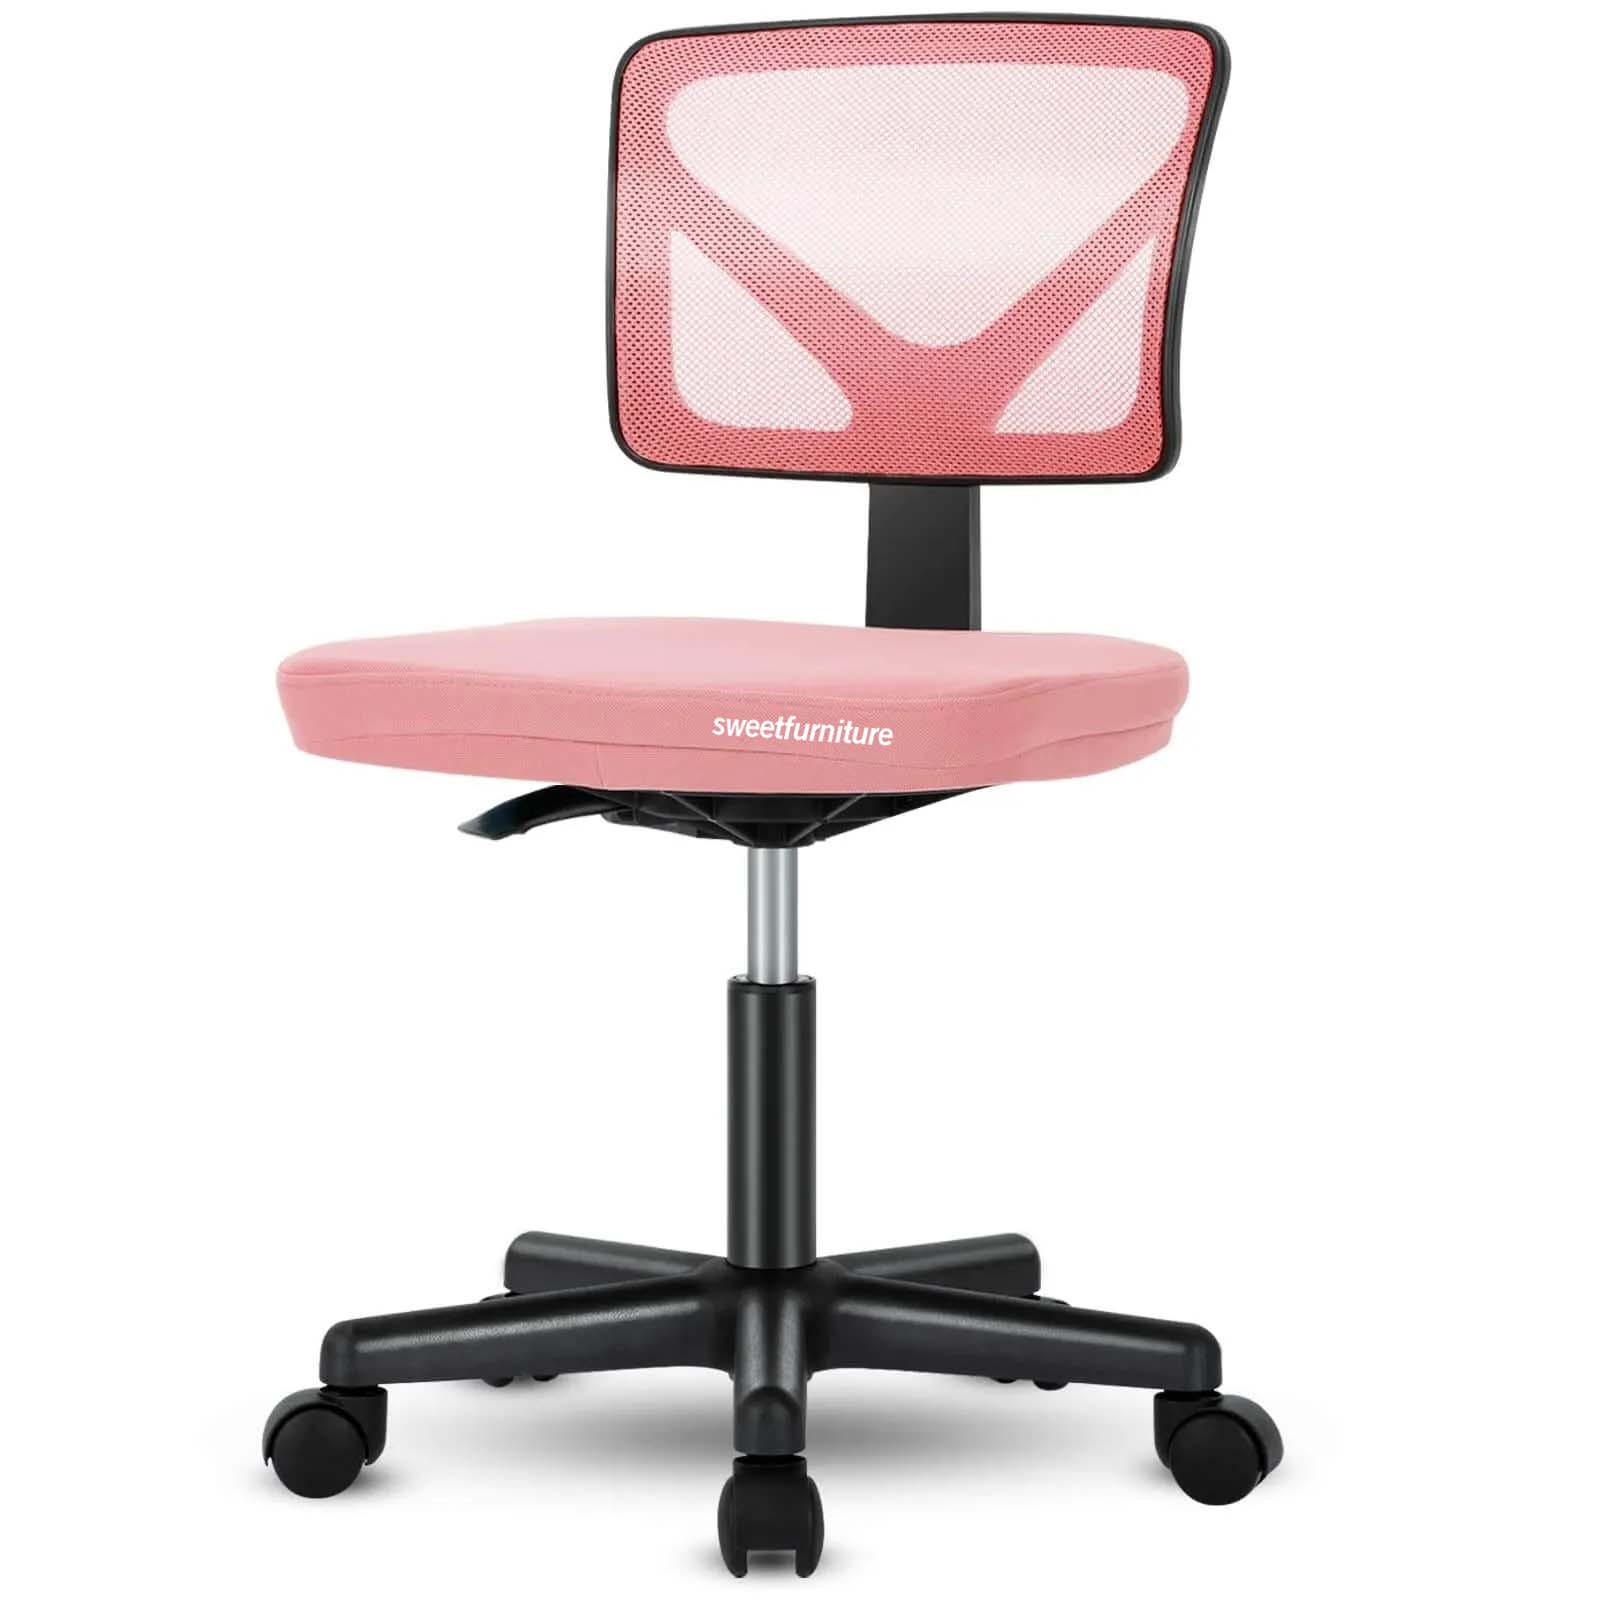 Armless Mesh Office Chair, Ergonomic Computer Desk Chair